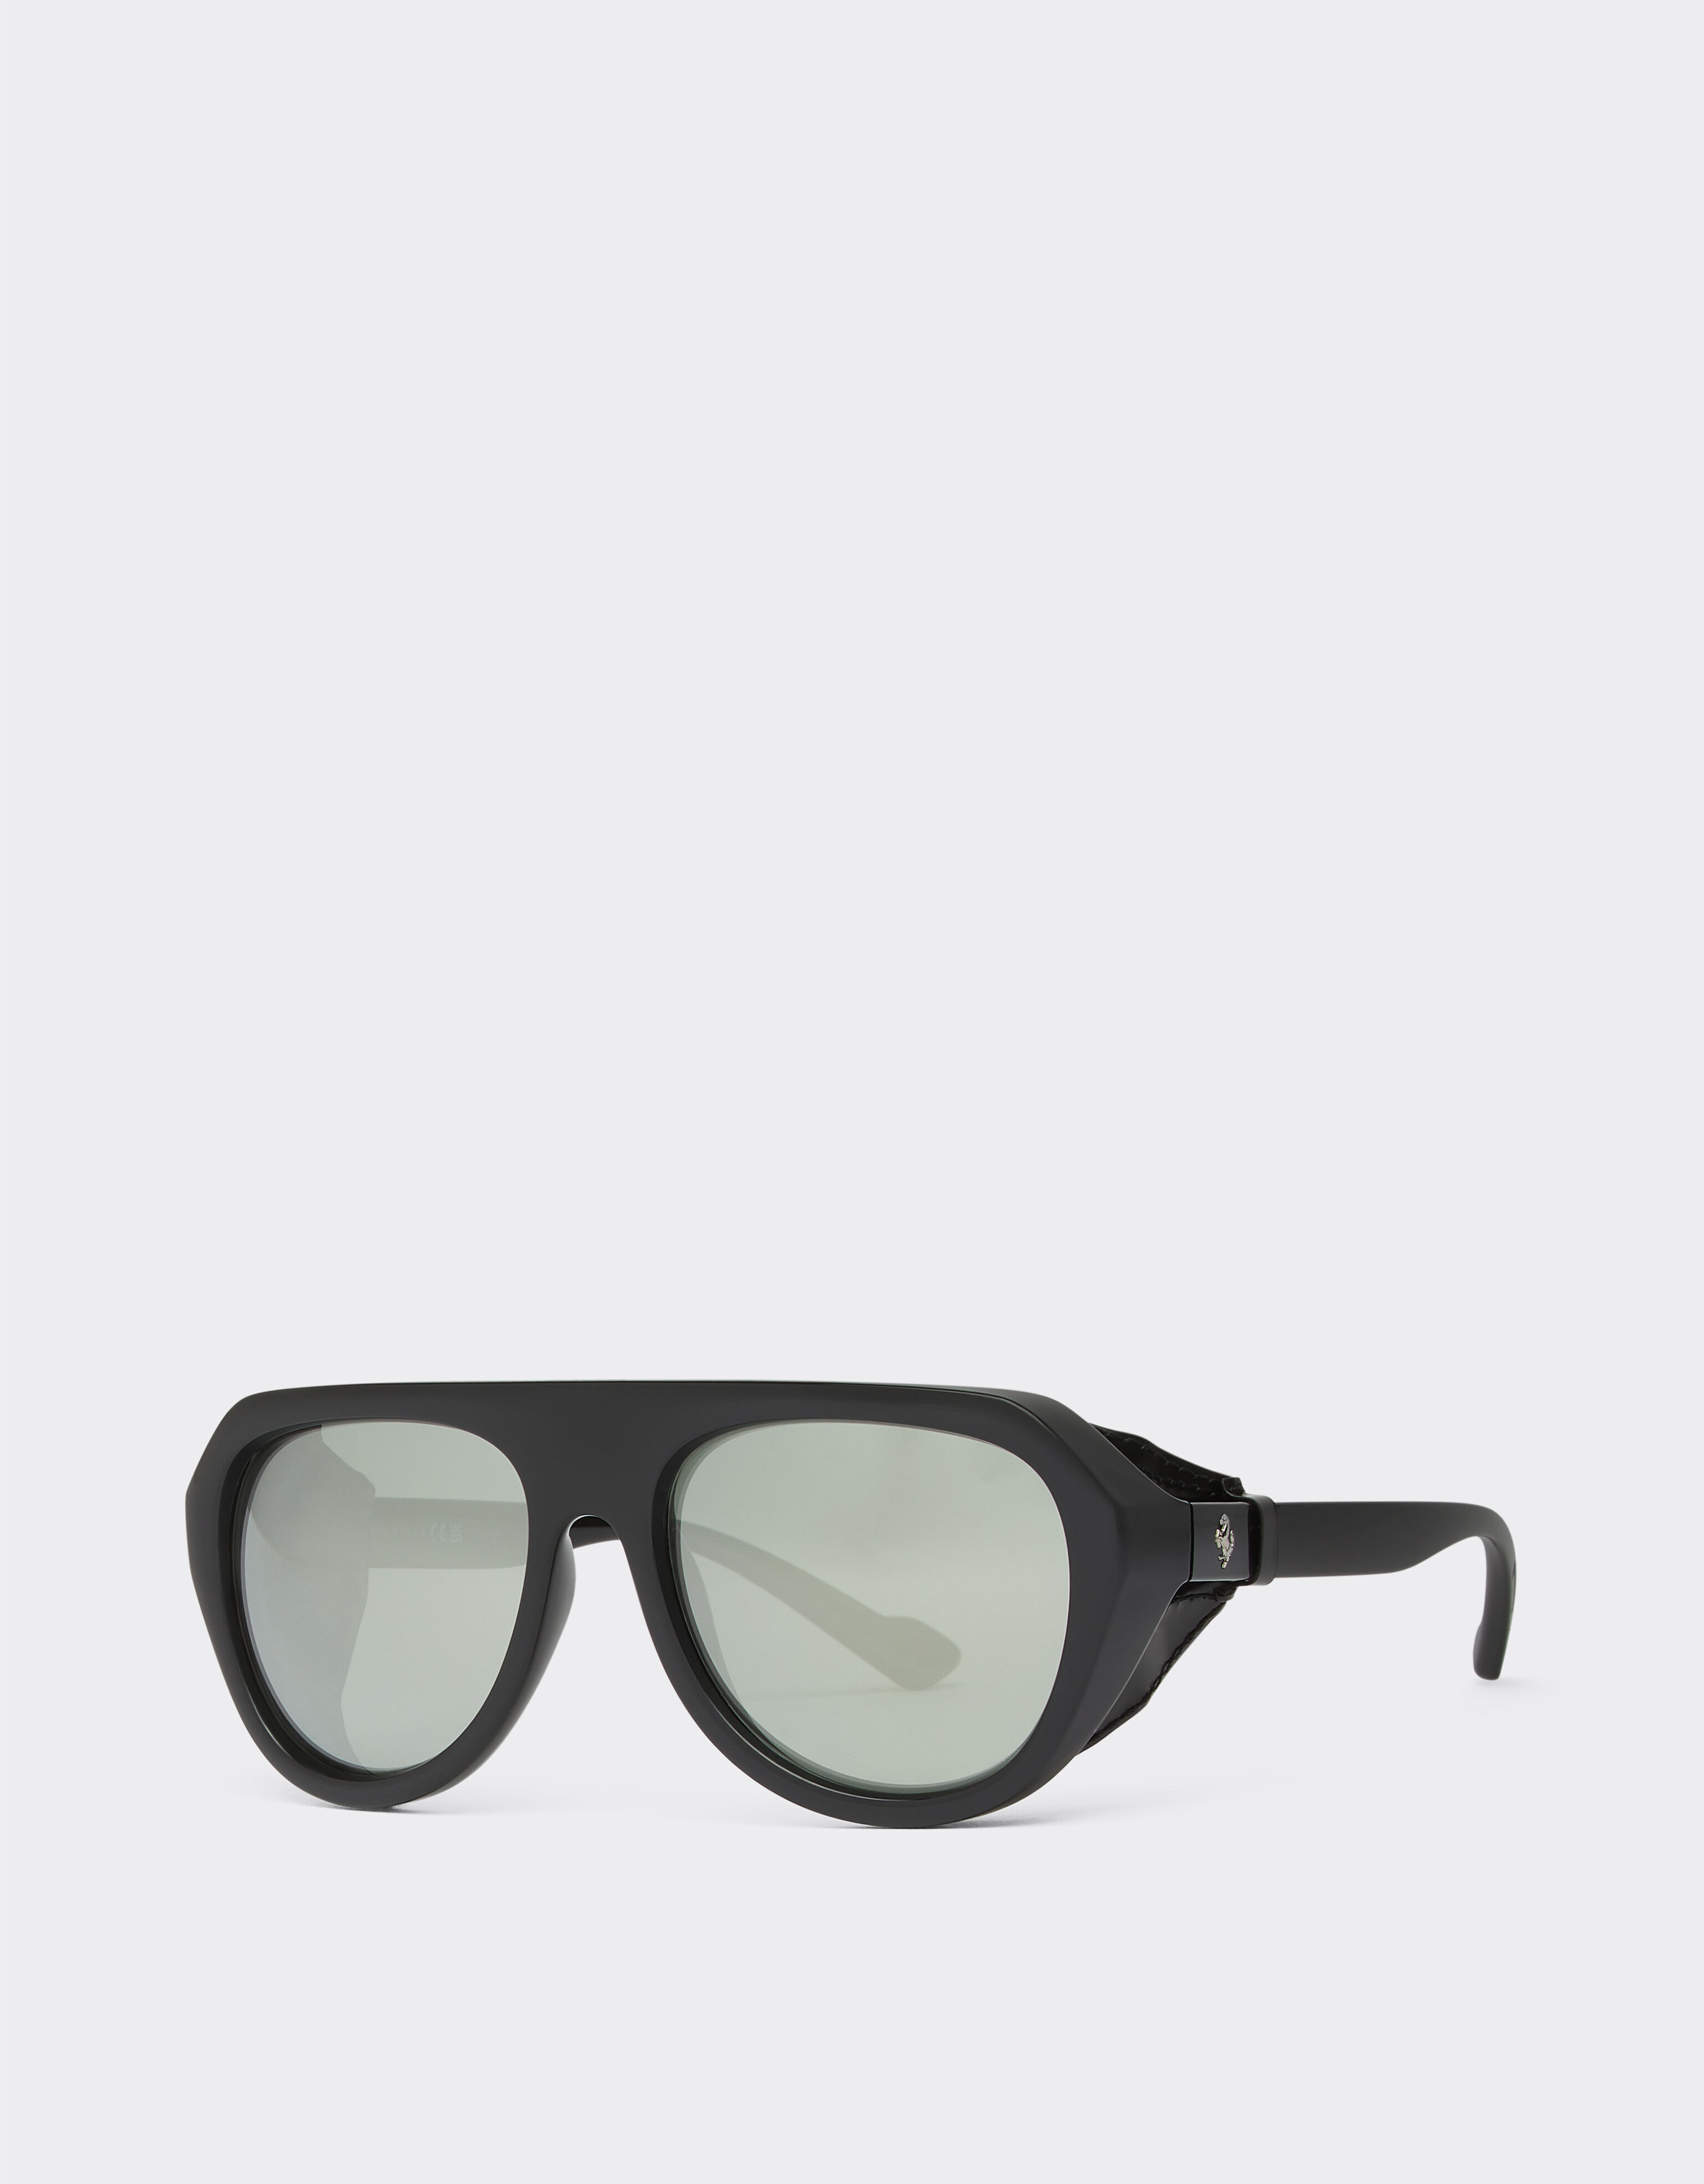 Ferrari Ferrari black sunglasses with leather details and polarised mirror lenses Black F1253f